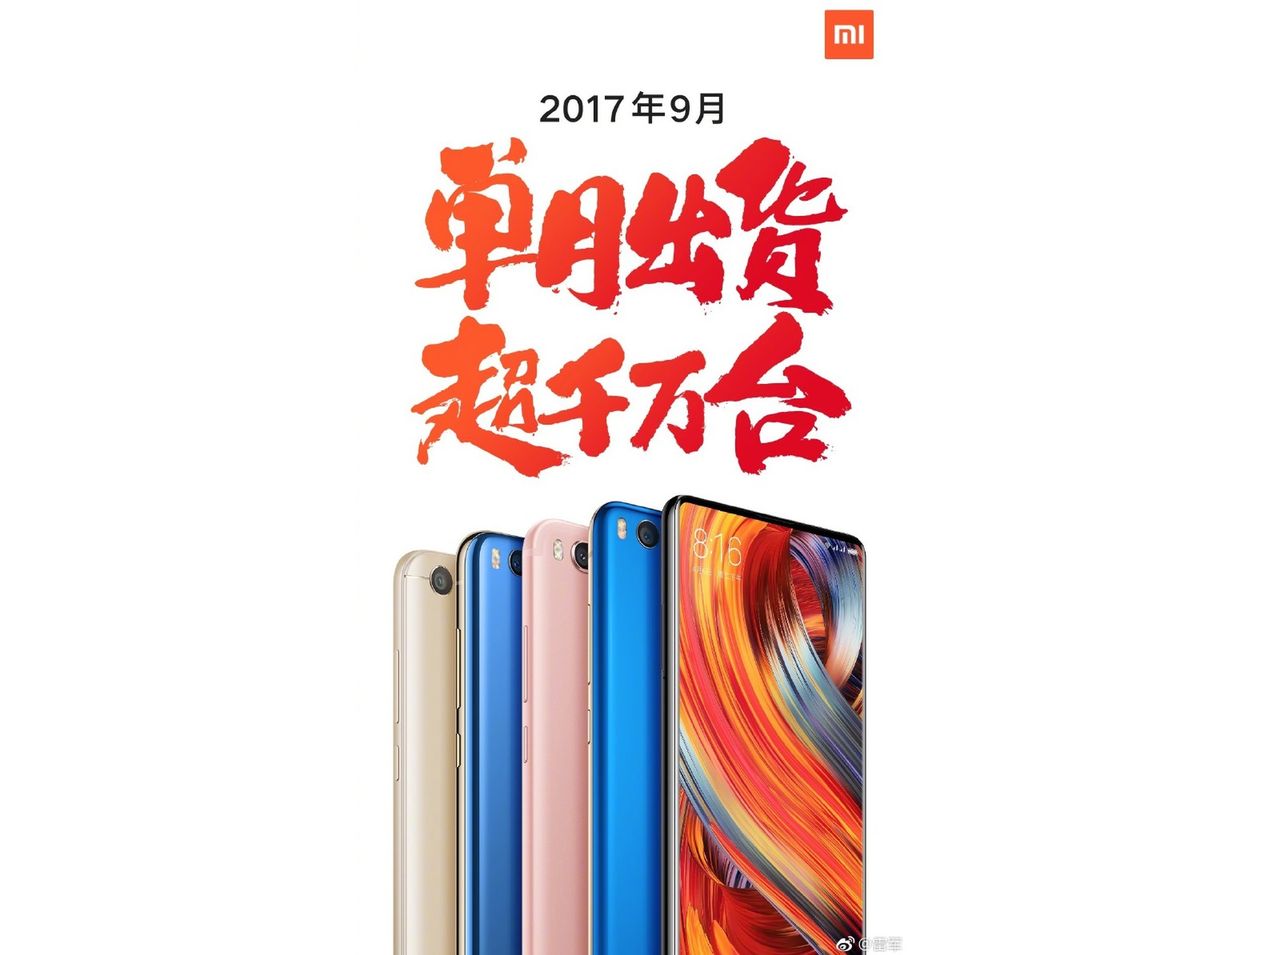 Xiaomi z 10 mln sprzedanych telefonów we wrześniu 2017 roku